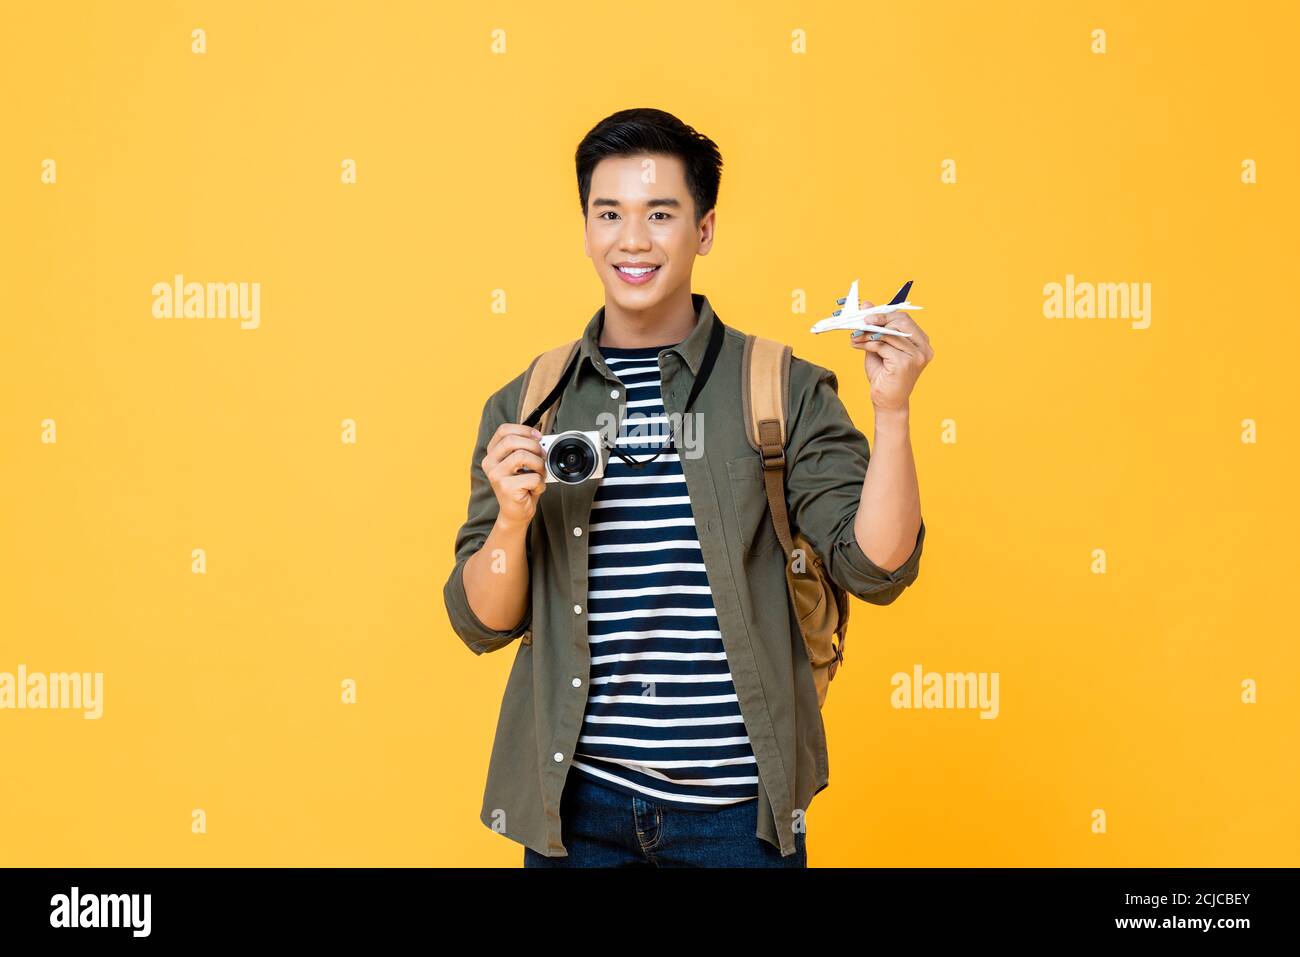 Porträt von jungen gut aussehend lächelnd asiatischen männlichen Touristen Backpacker halten Flugzeug-Modell und Kamera isoliert auf Studio gelben Hintergrund Stockfoto